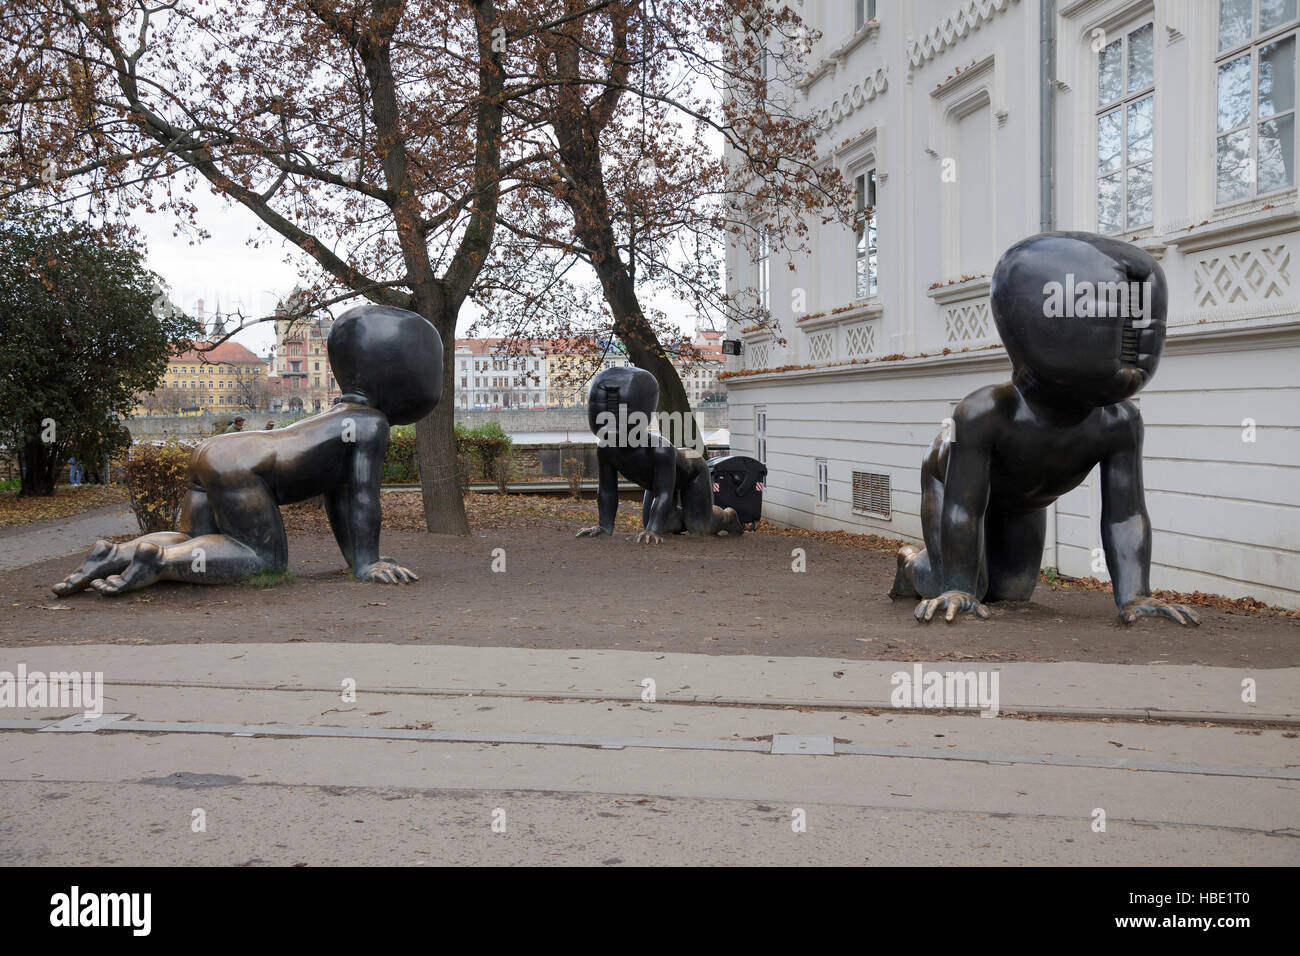 Krabbelnden Babys Skulpturen von David Cerny, Prag, Tschechische Republik Stockfoto